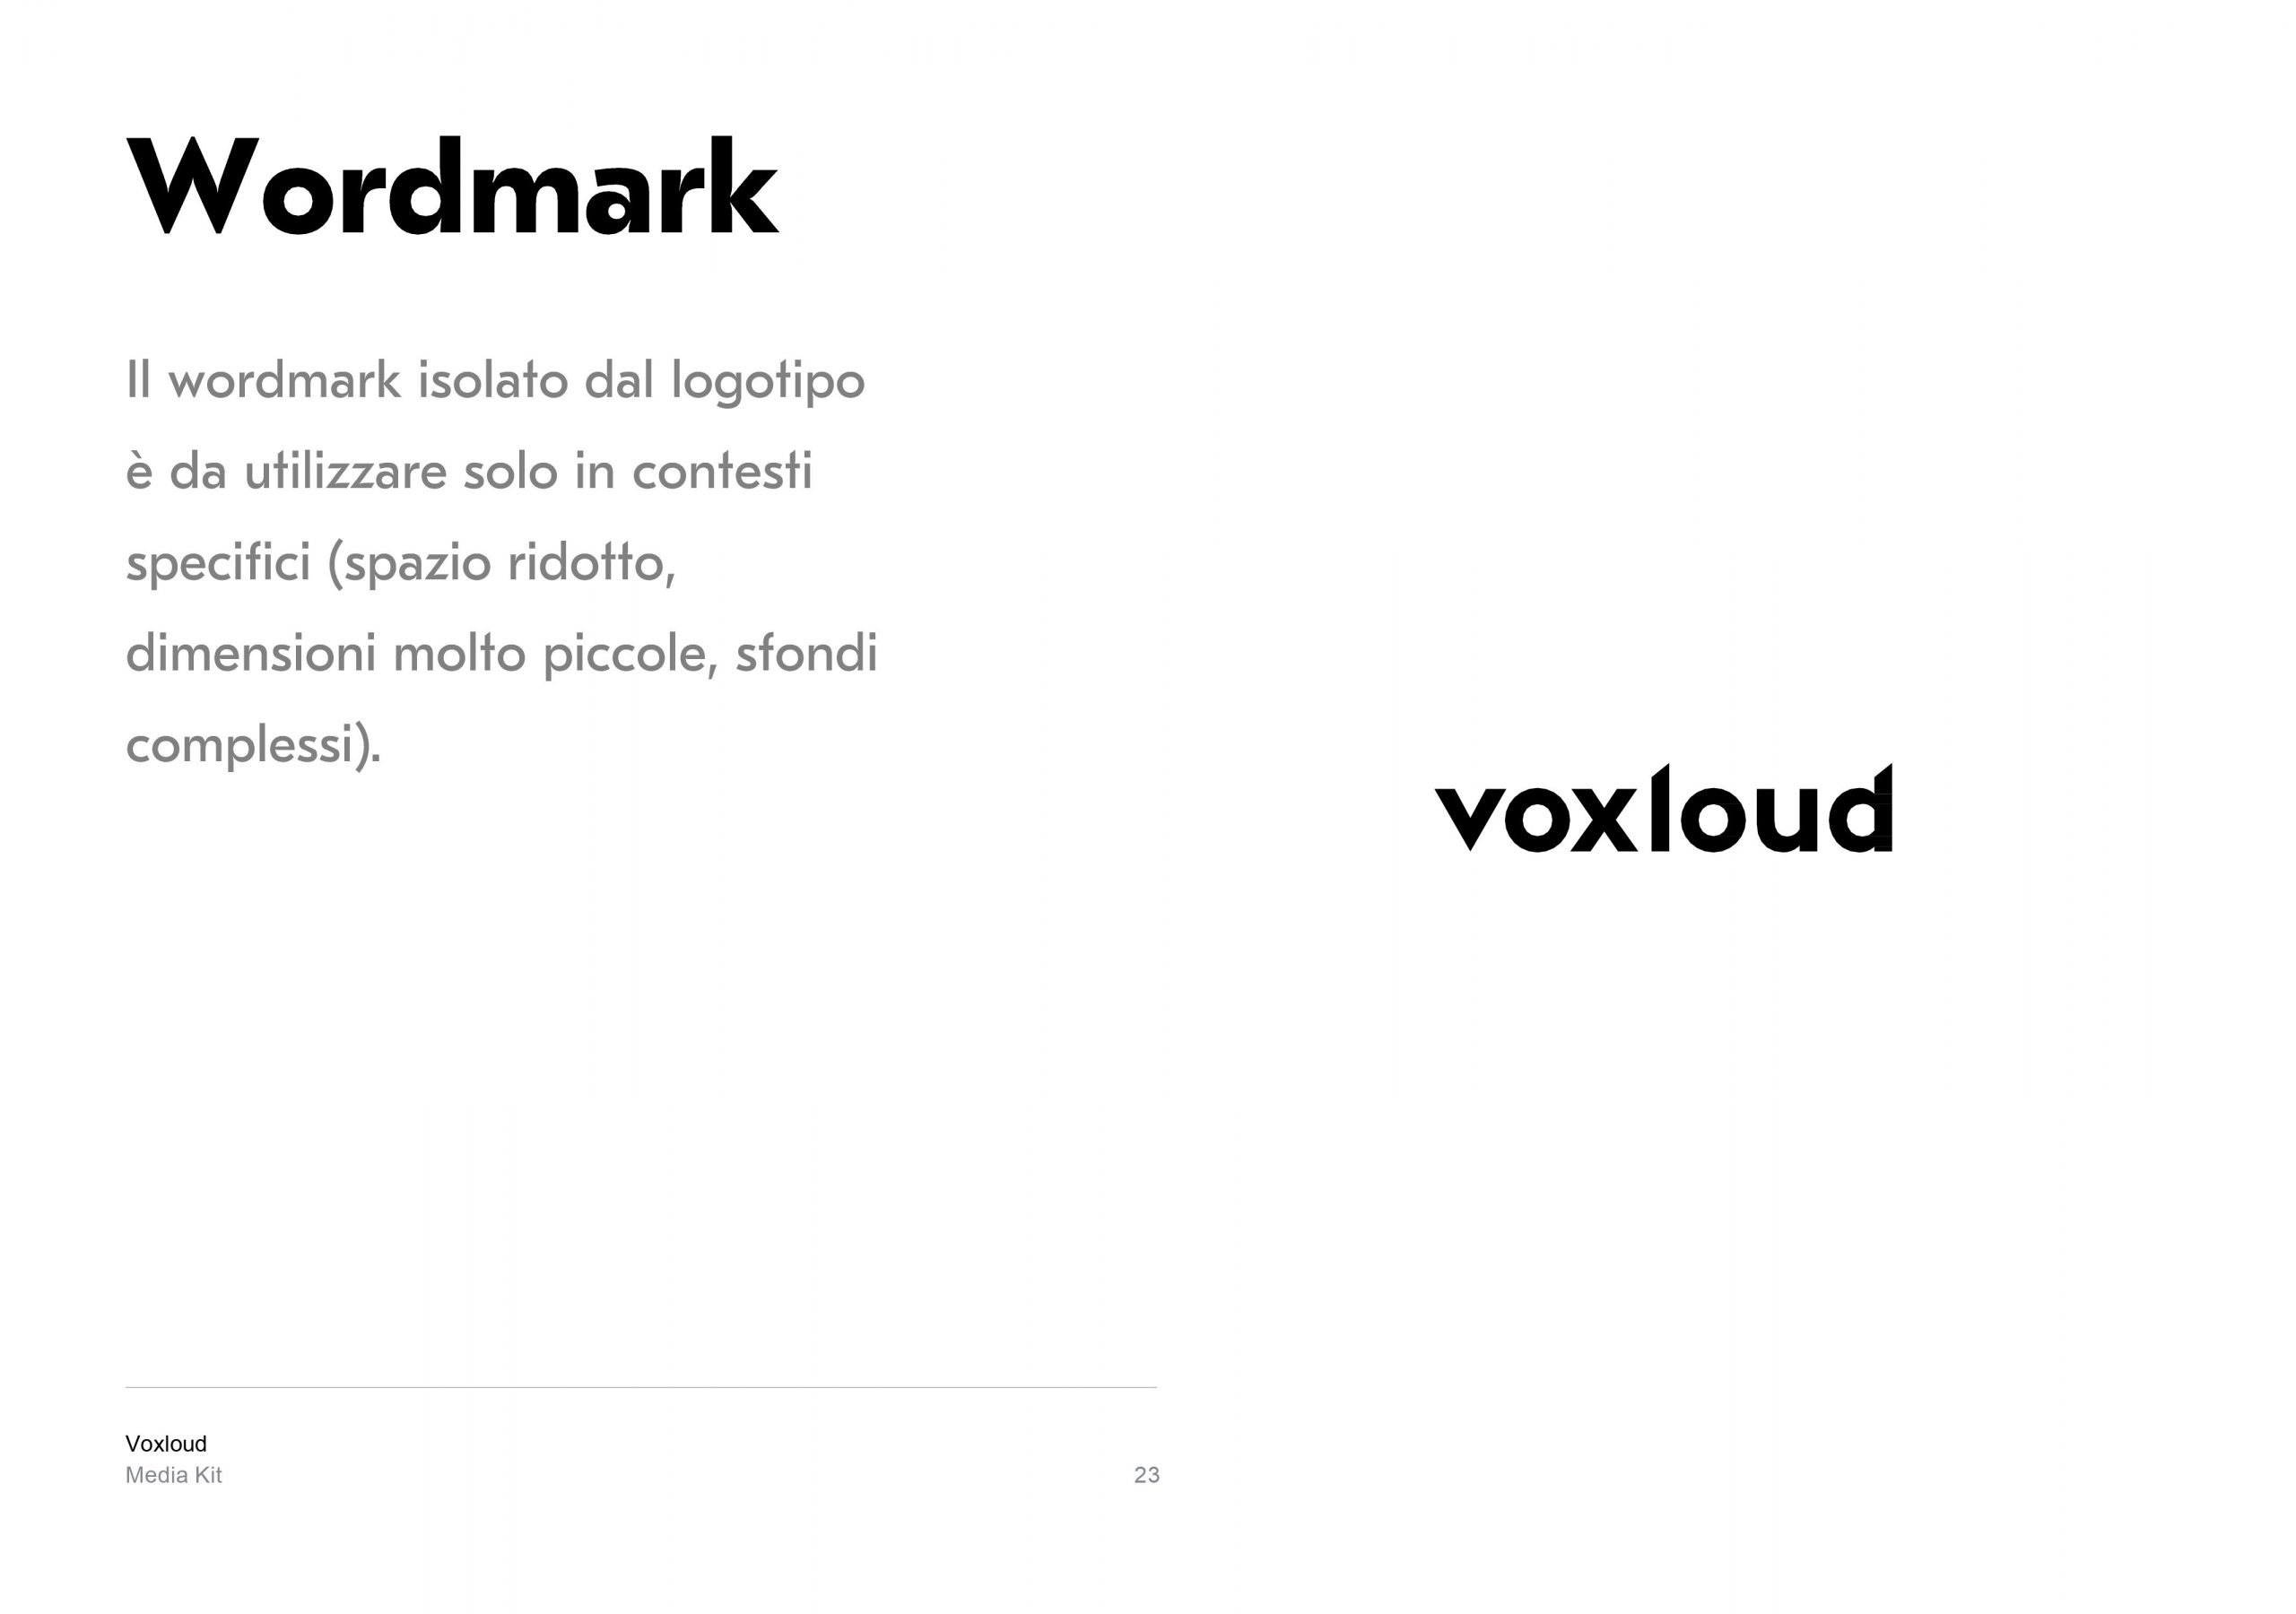 Voxloud Media Kit_IT_23